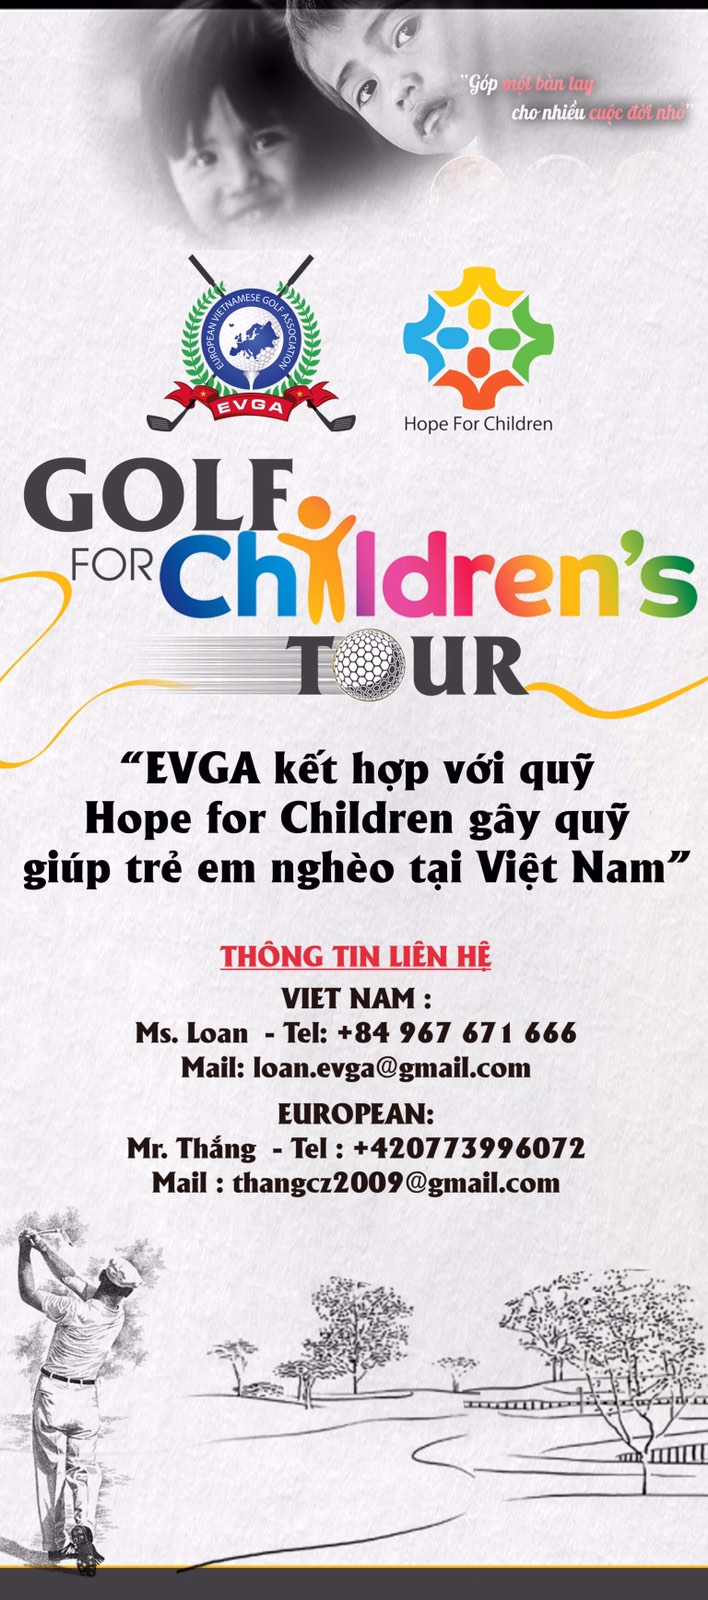 EVGA Tour Tết lần thứ 2 tổ chức tại Việt Nam với chủ đề "Golf for Children's Tour"